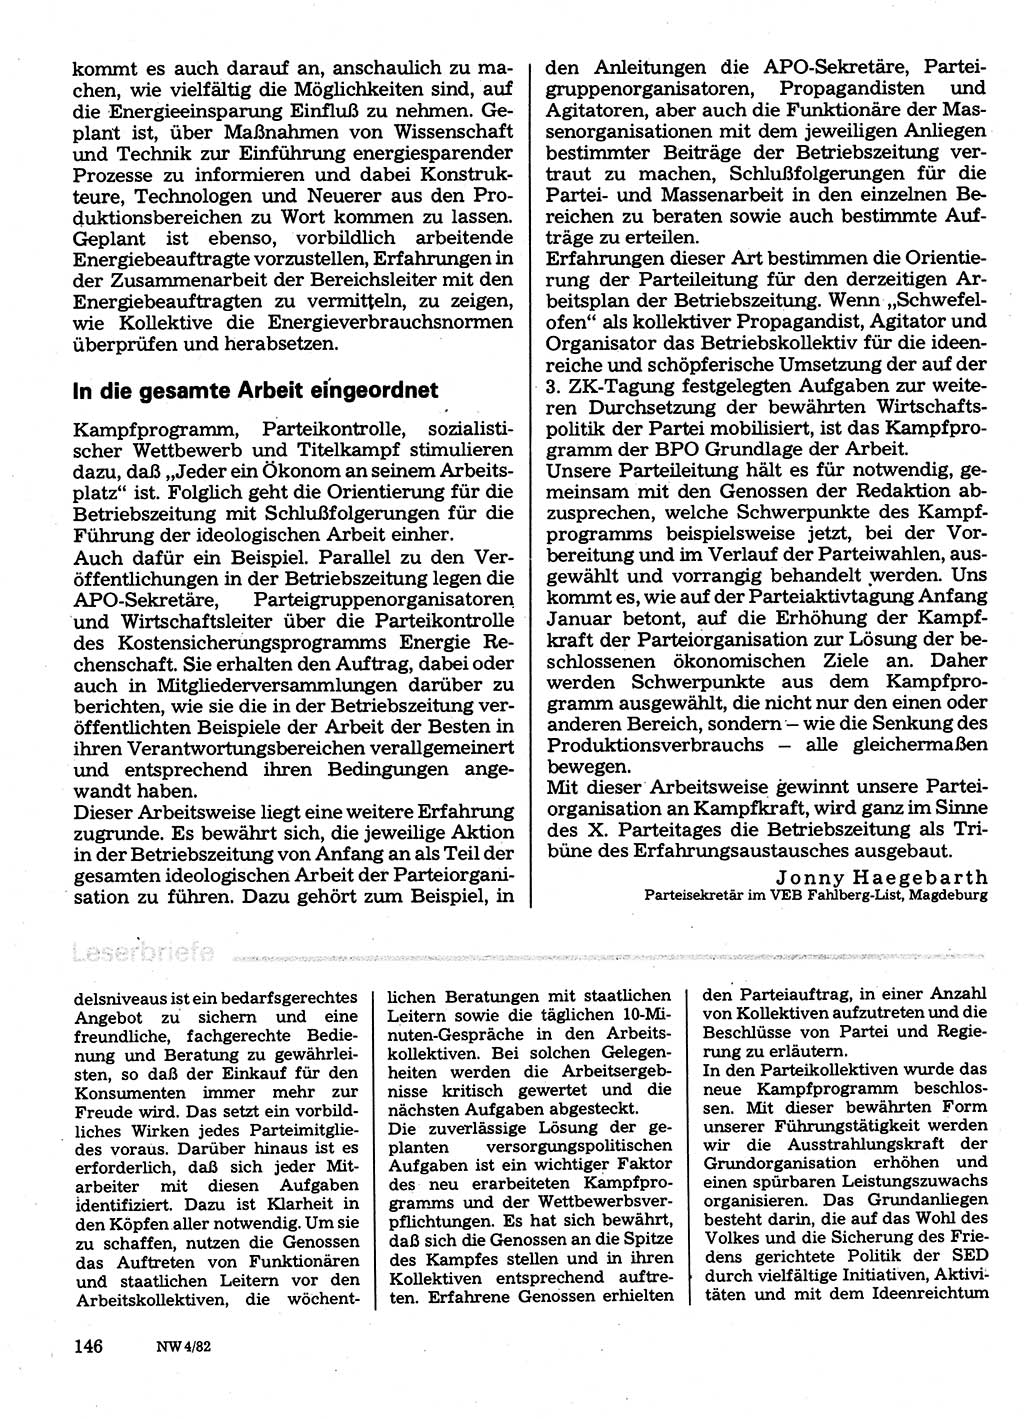 Neuer Weg (NW), Organ des Zentralkomitees (ZK) der SED (Sozialistische Einheitspartei Deutschlands) für Fragen des Parteilebens, 37. Jahrgang [Deutsche Demokratische Republik (DDR)] 1982, Seite 146 (NW ZK SED DDR 1982, S. 146)